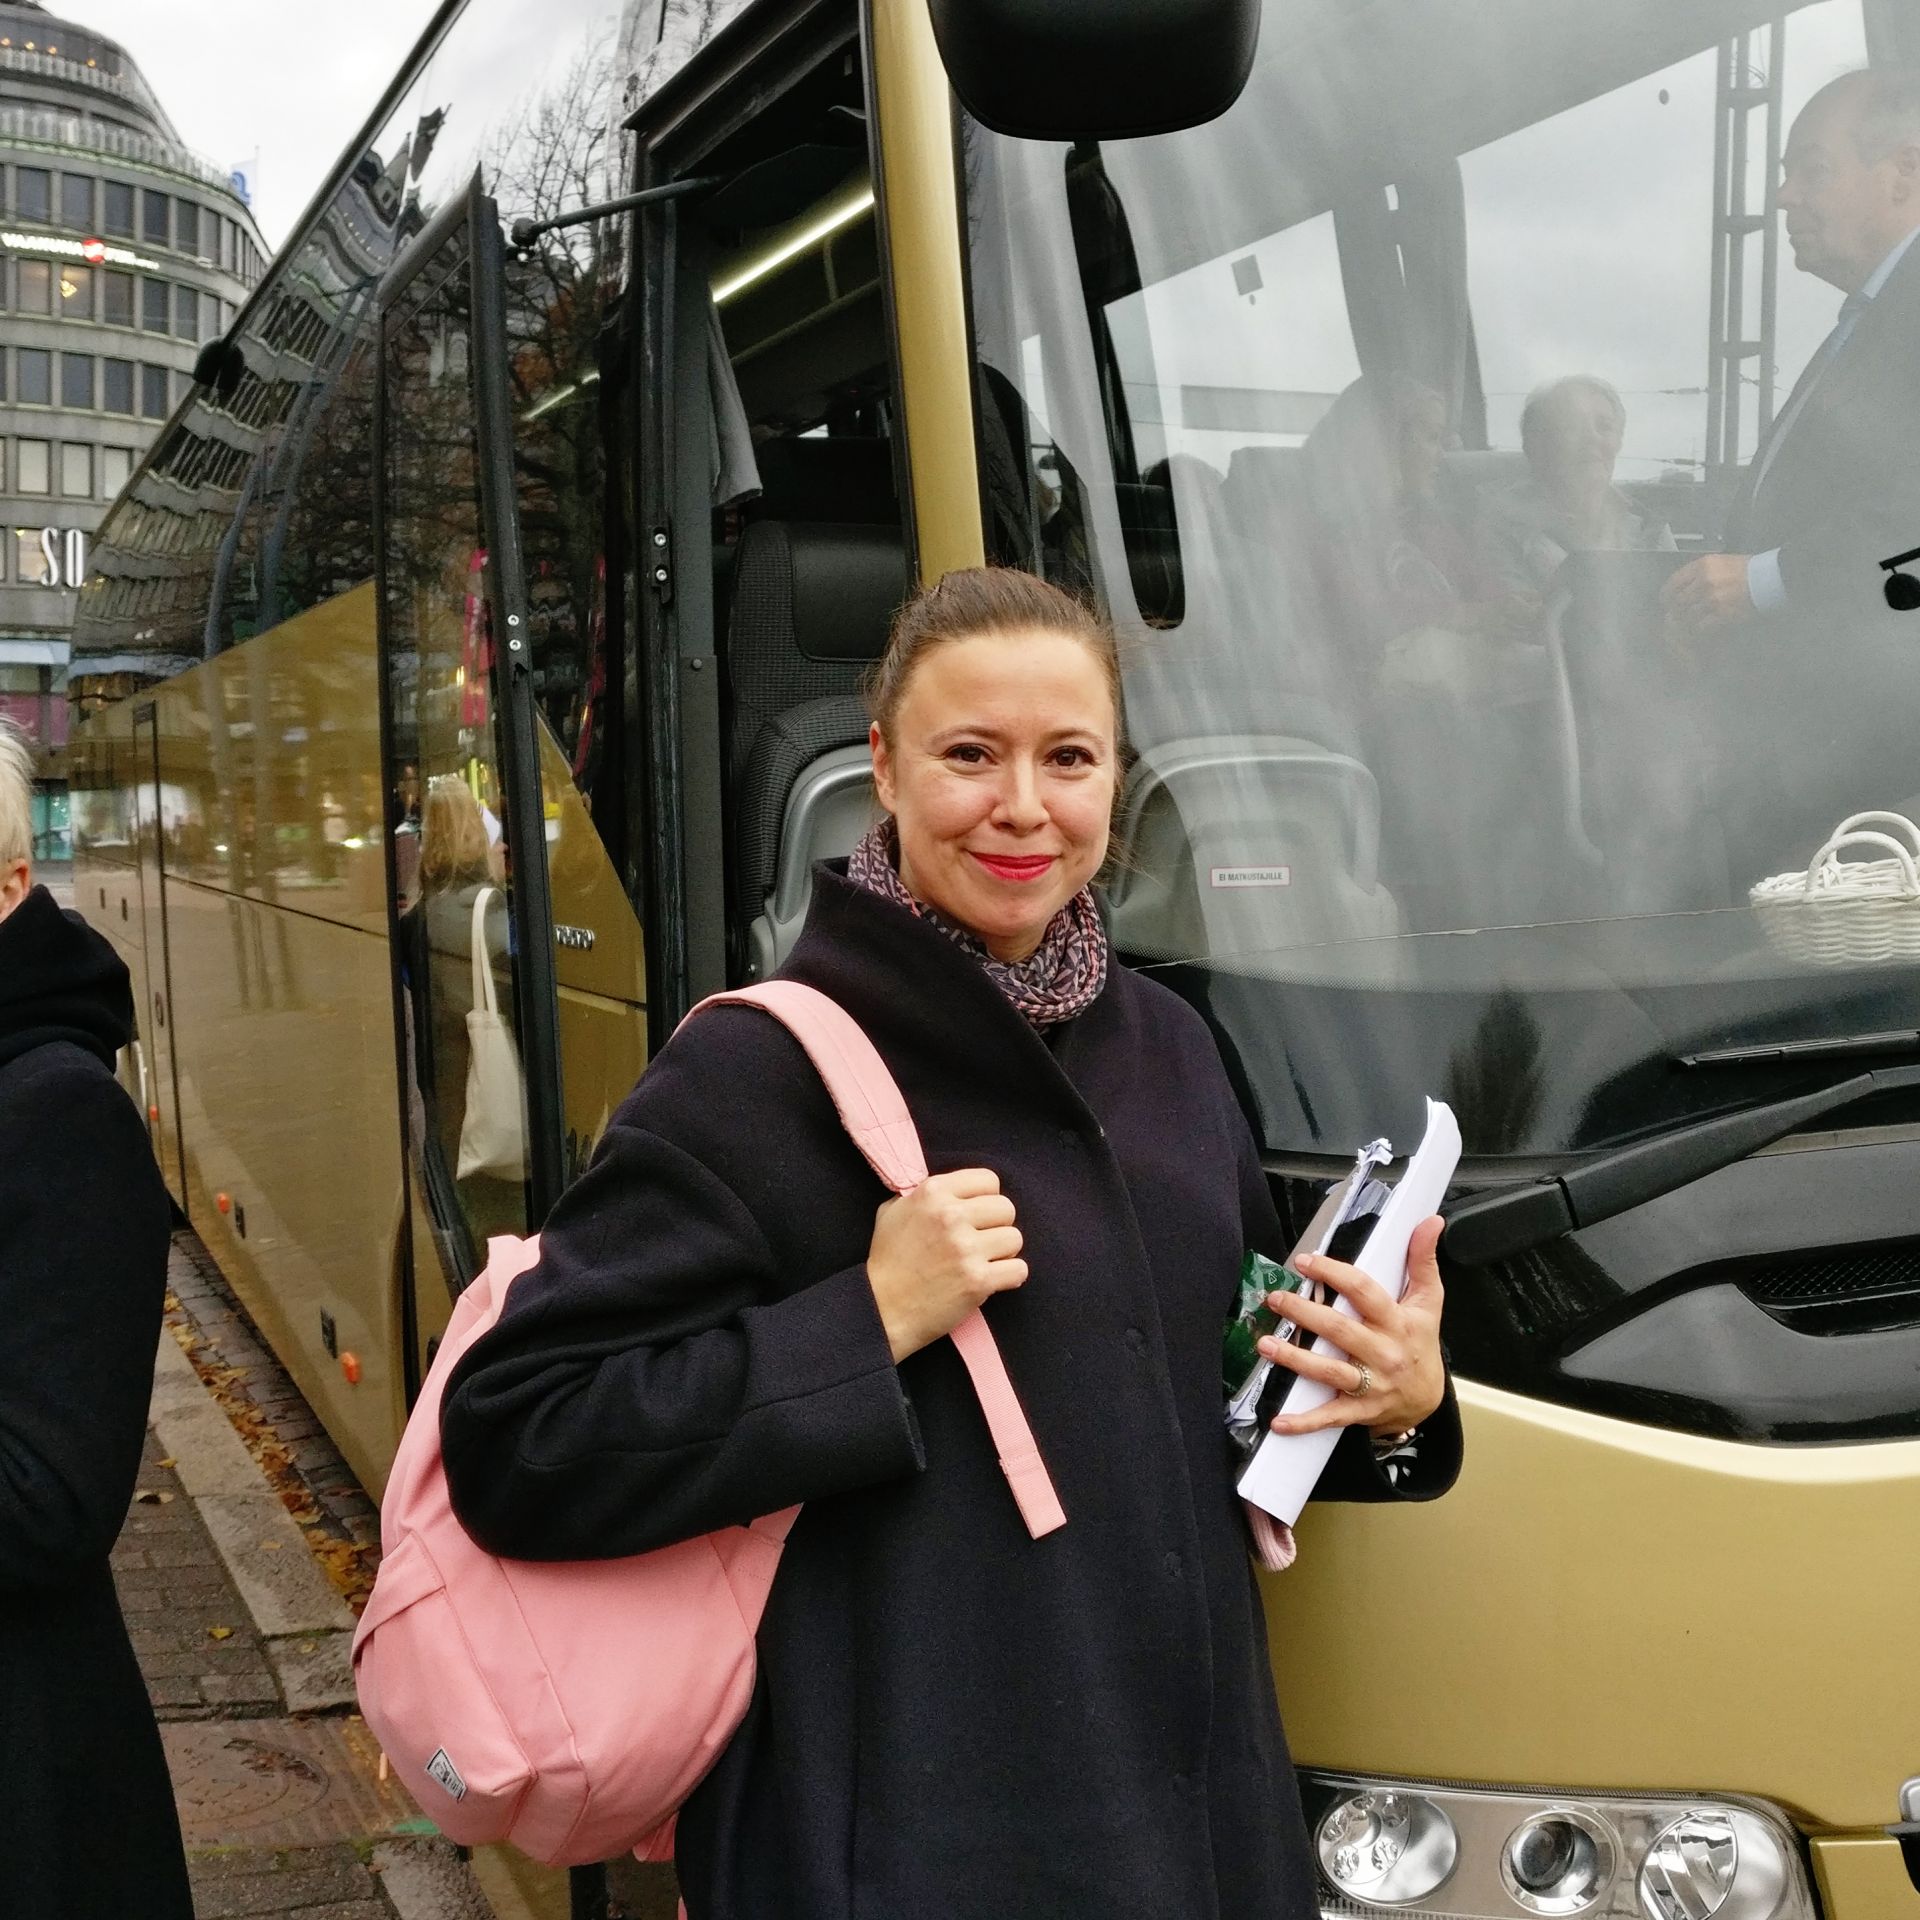 Kvinna i 30-40 års åldern med rosa ryggsäck som står framför en buss.